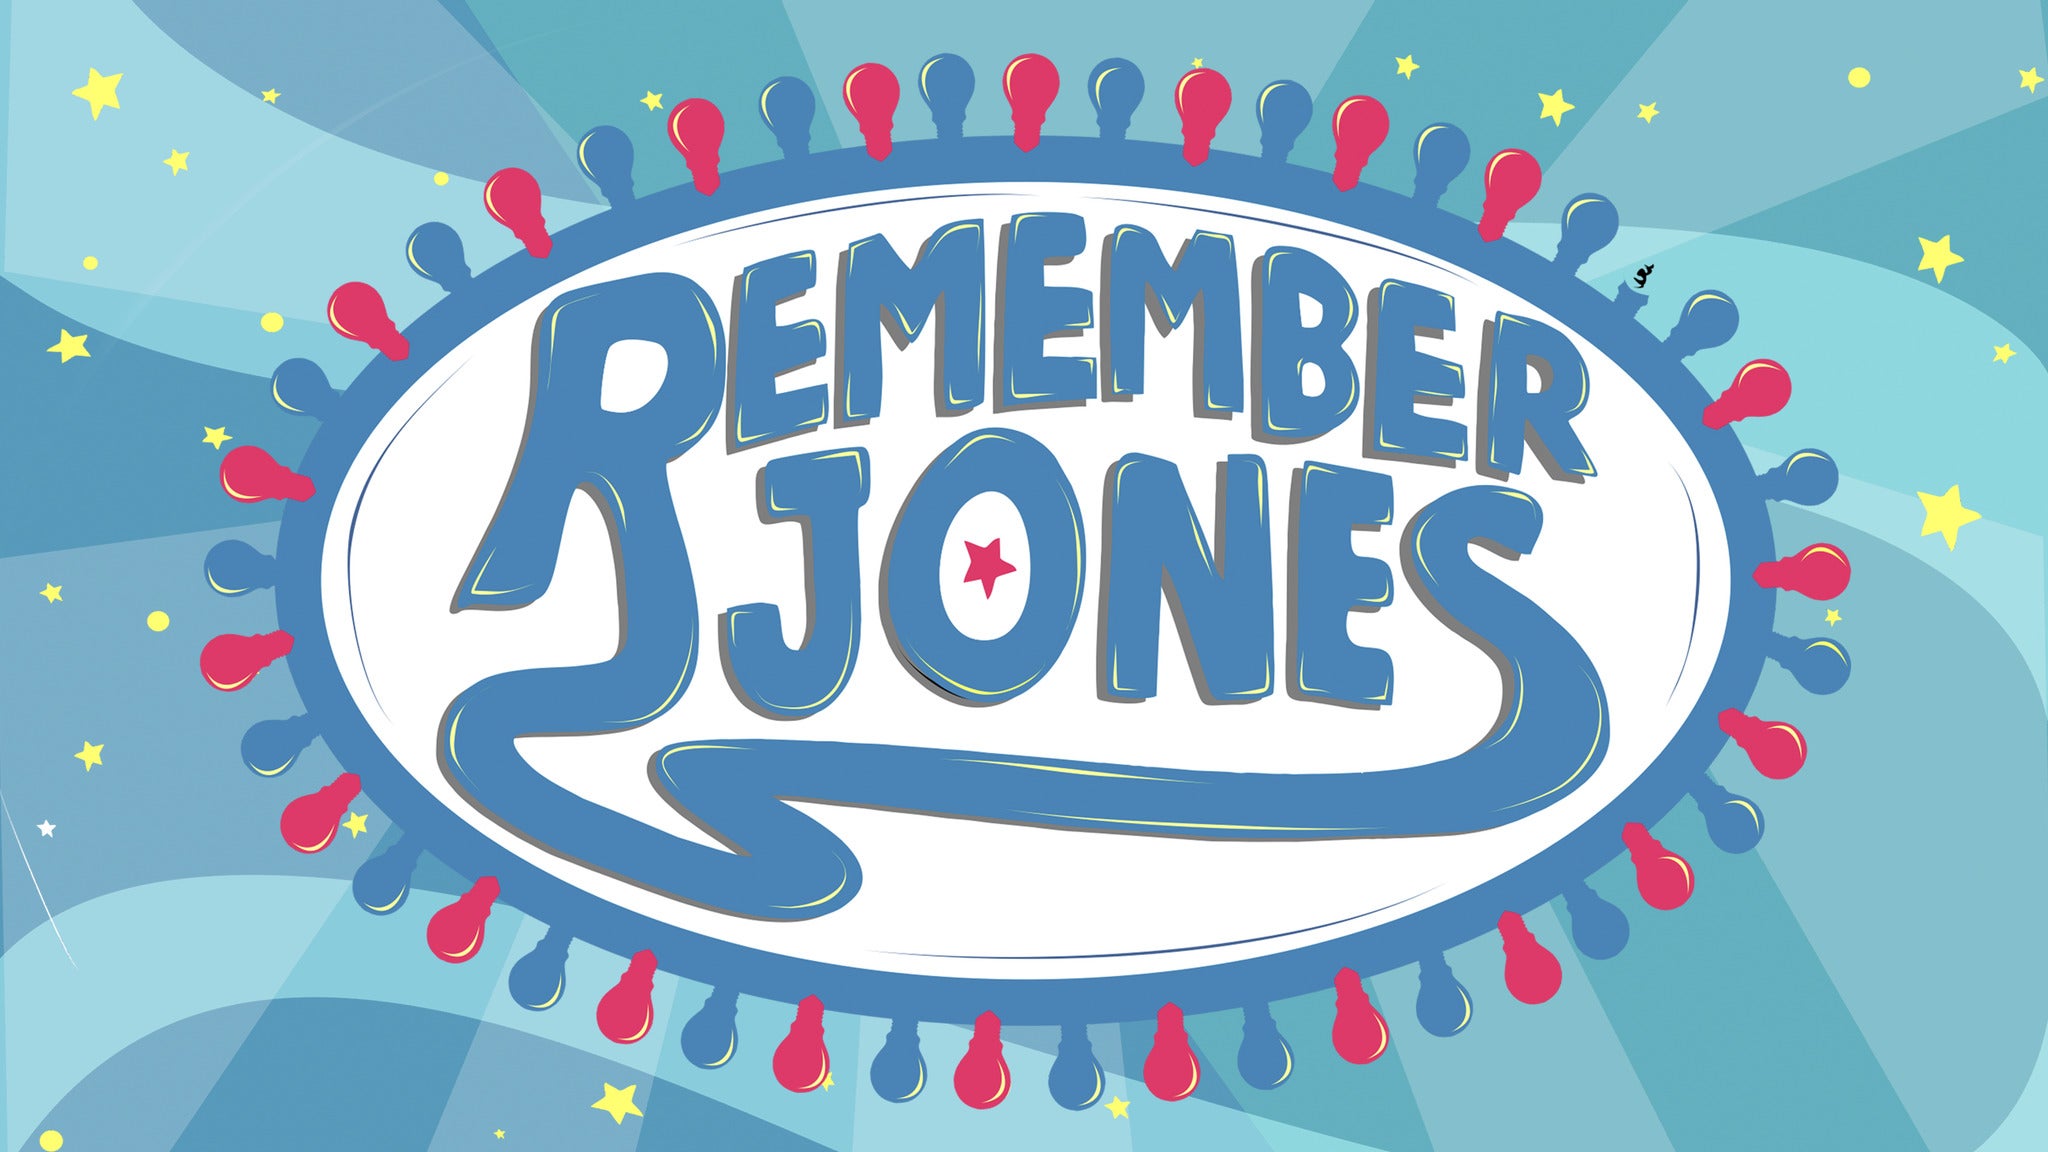 Remember Jones